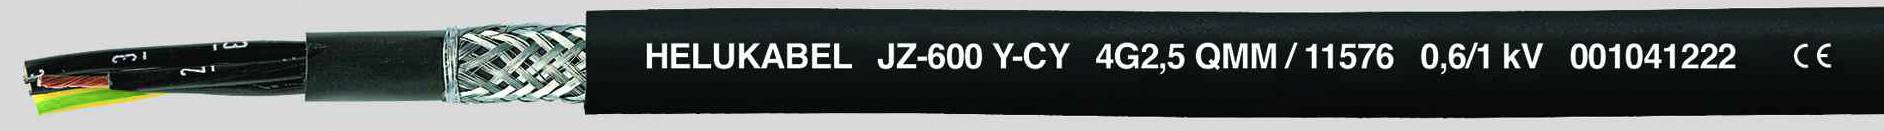 HELUKABEL JZ-600-Y-CY Steuerleitung 7 G 1.50 mm² Schwarz 11551-500 500 m